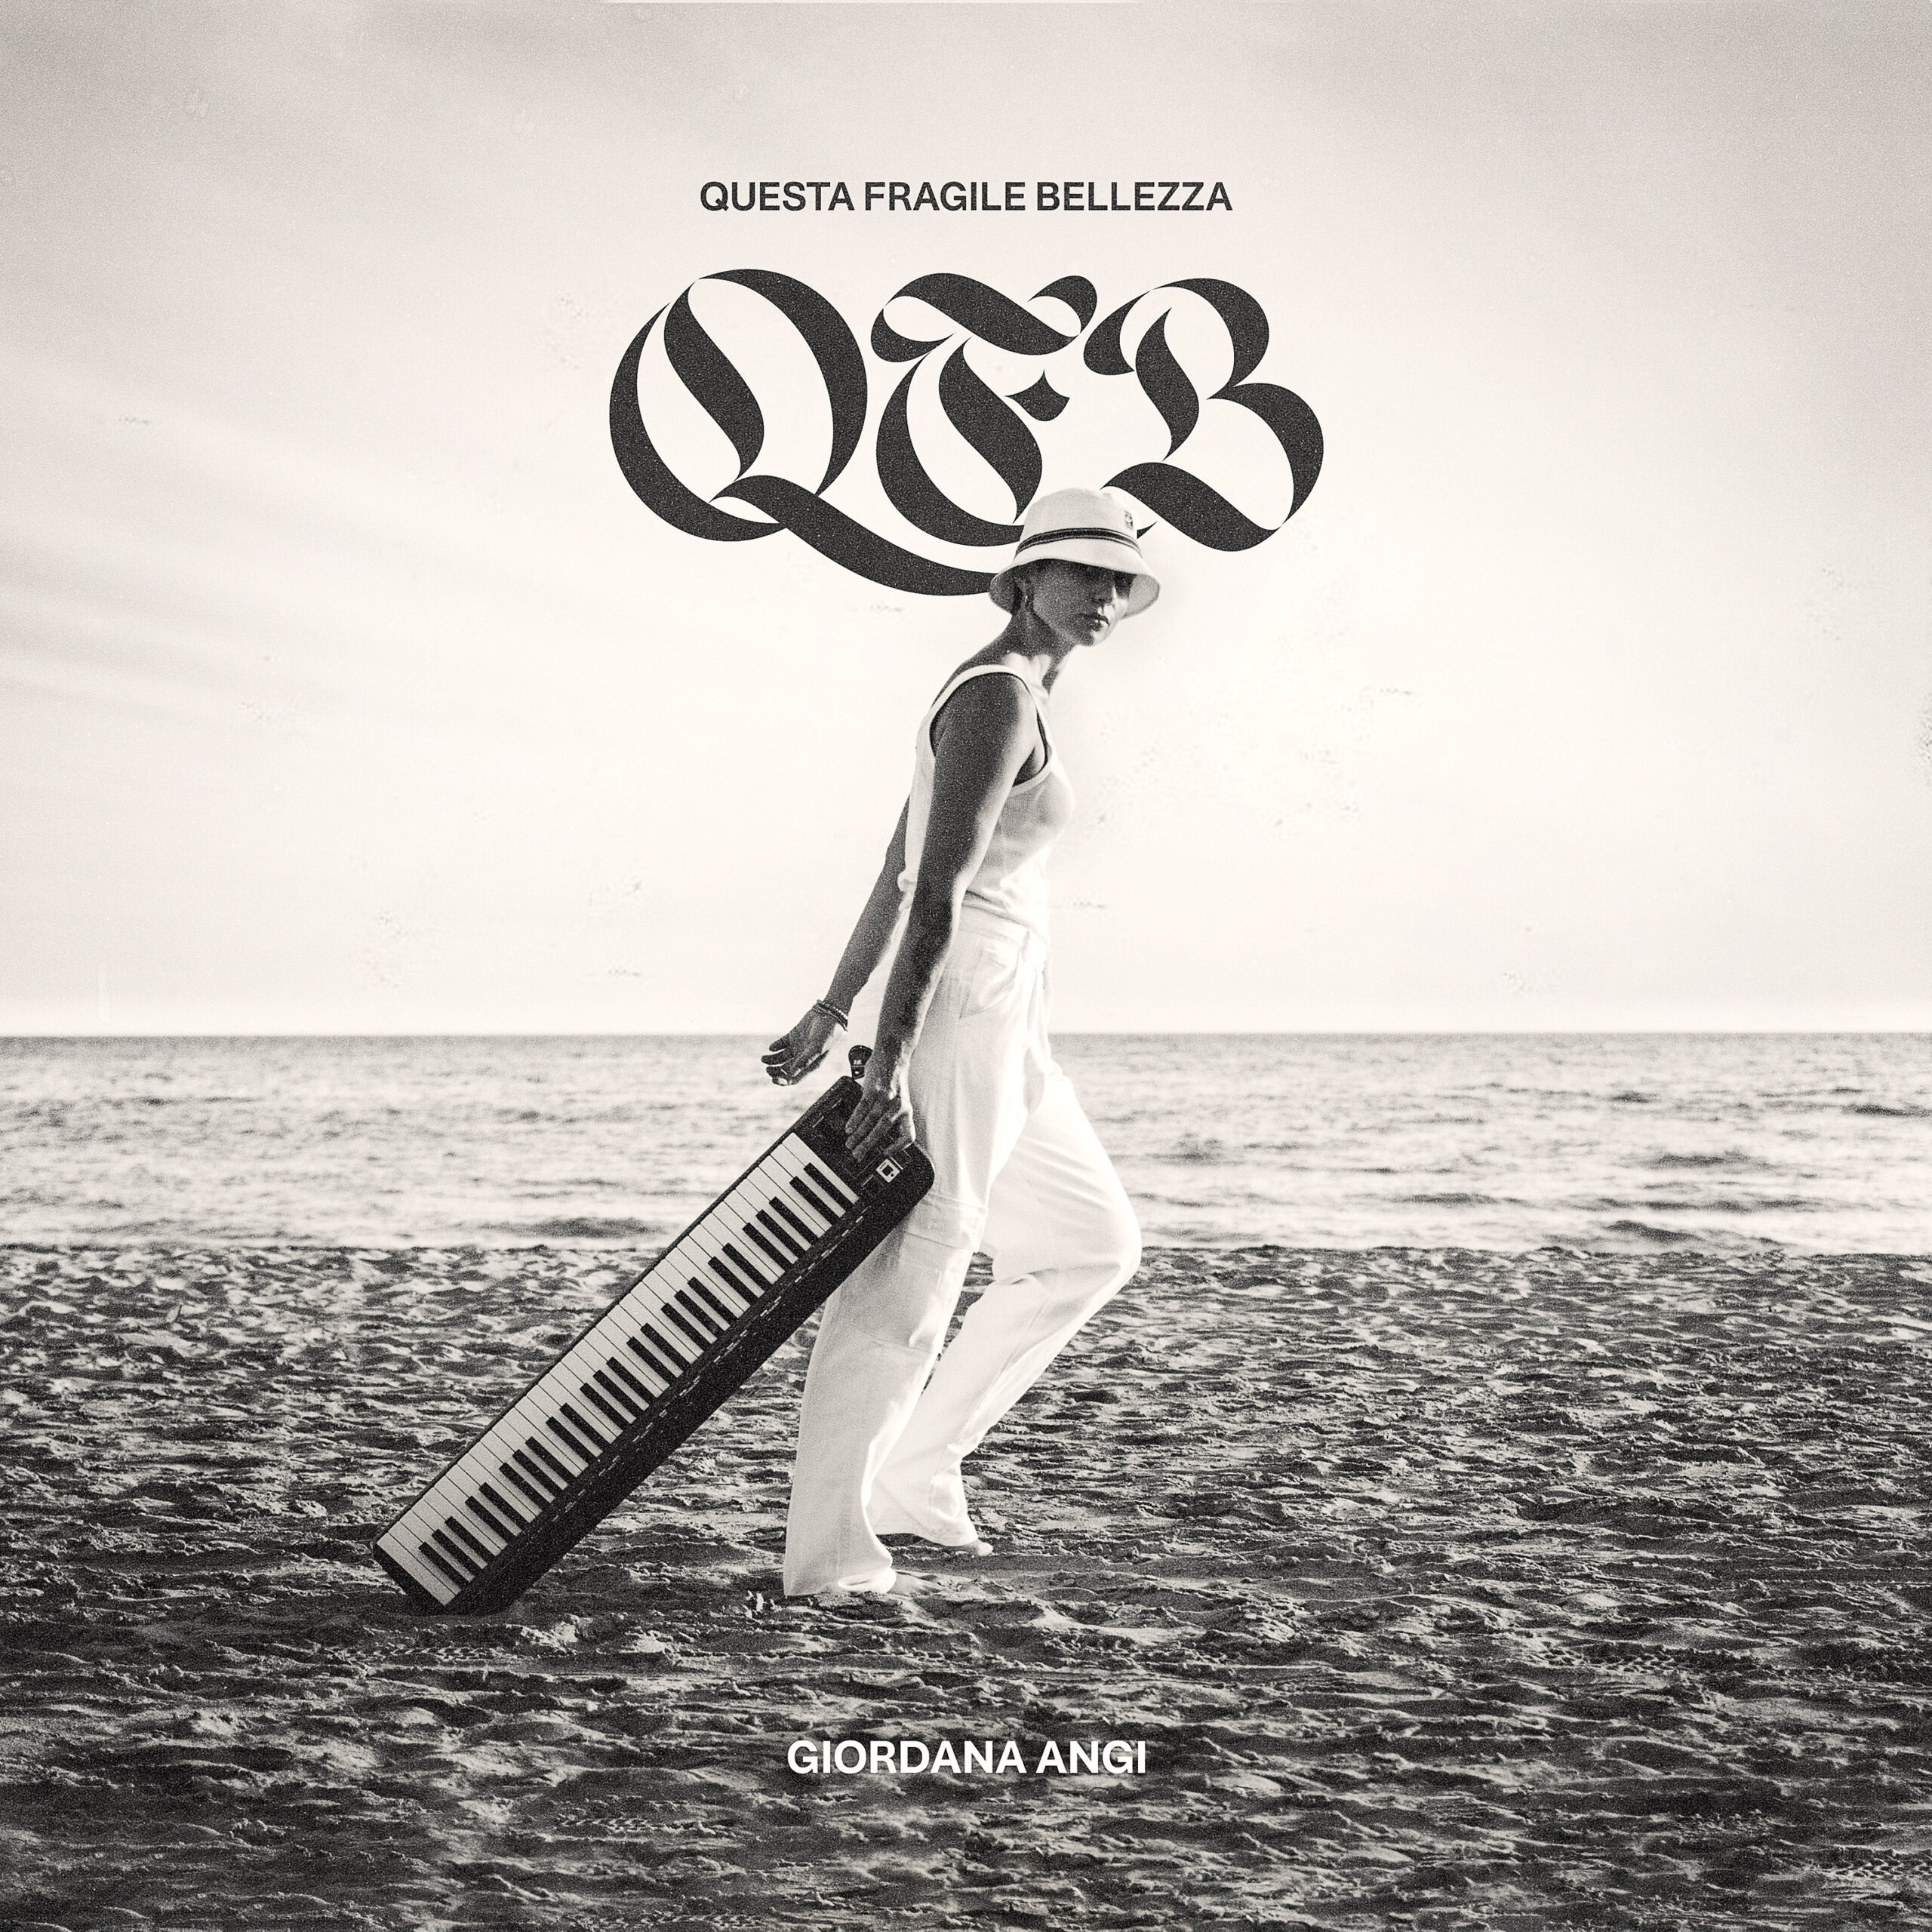 GIORDANA ANGI: annunciato l’album dal titolo “QUESTA FRAGILE BELLEZZA” in uscita venerdì 28 ottobre